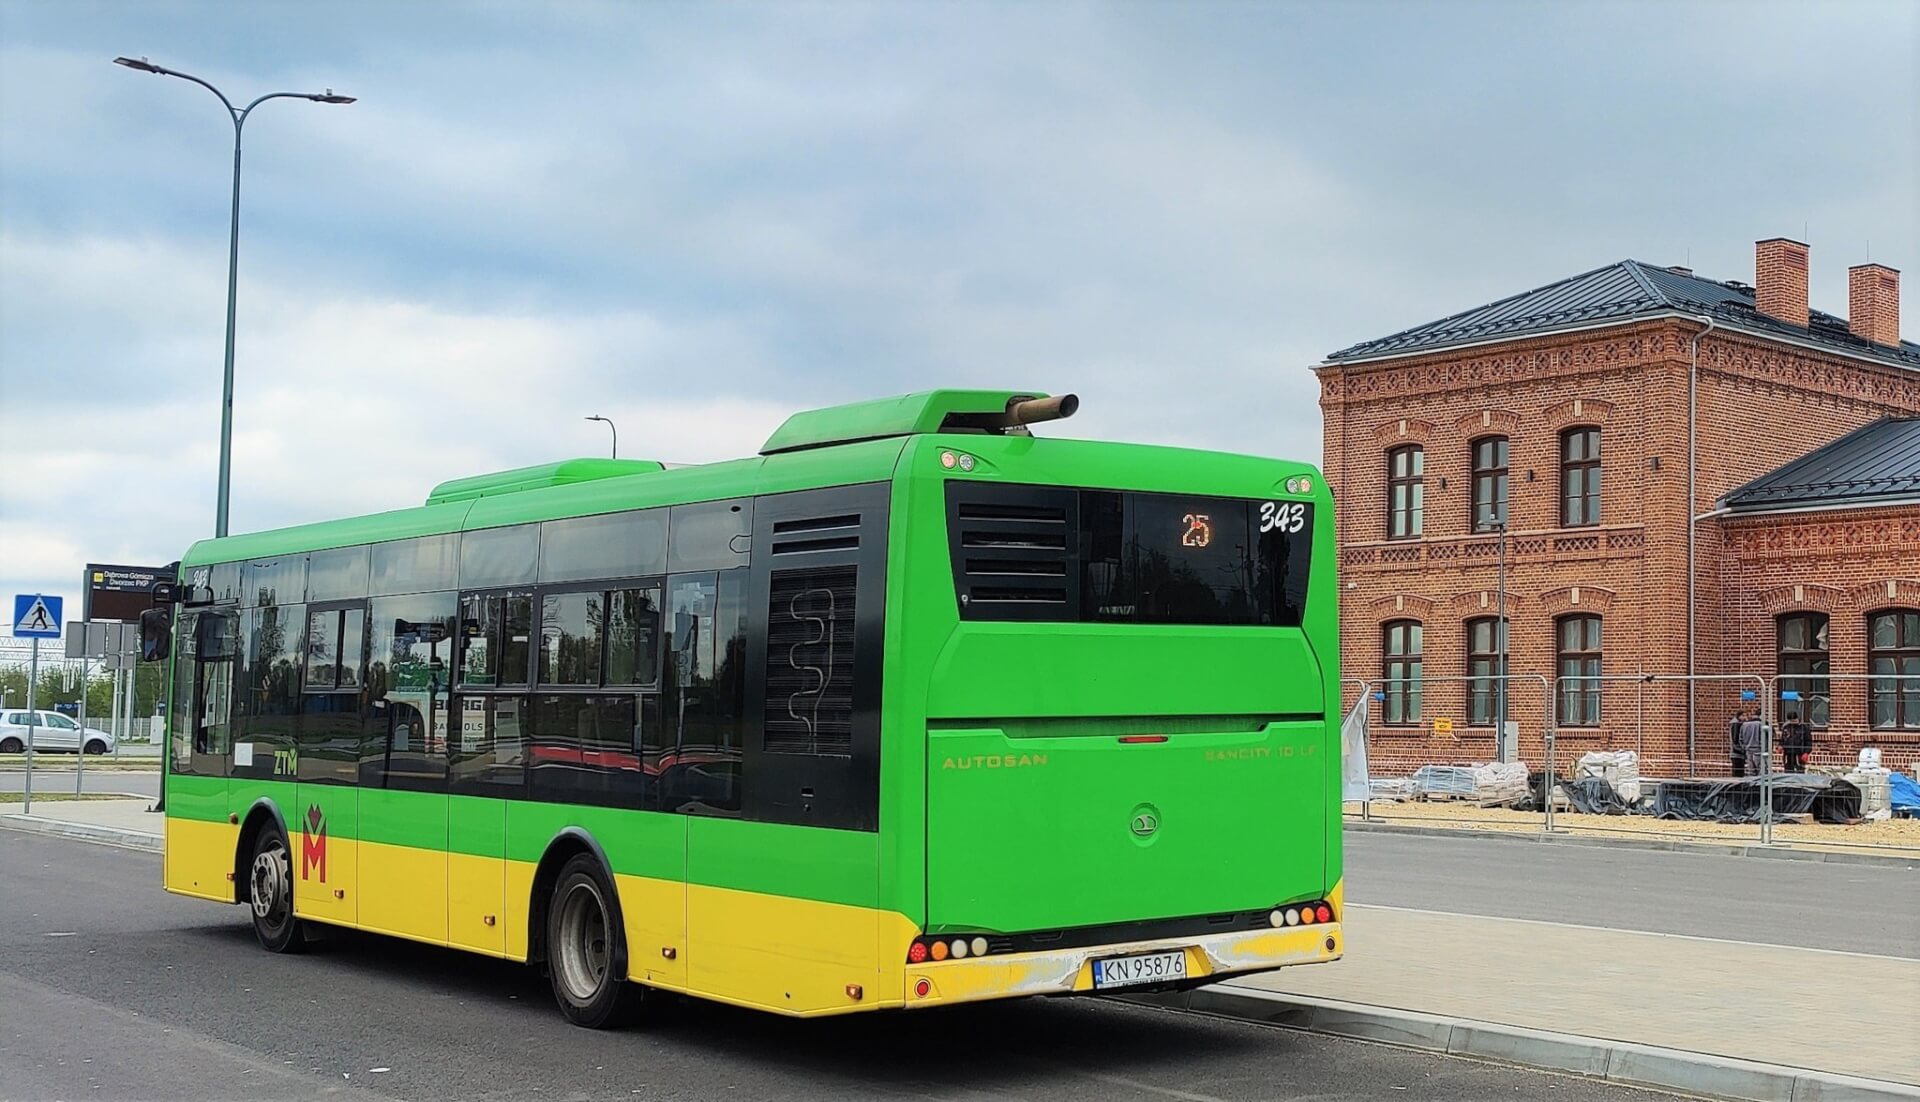 W Dąbrowie Górniczej doszło do zmian w autobusowym rozkładzie jazdy